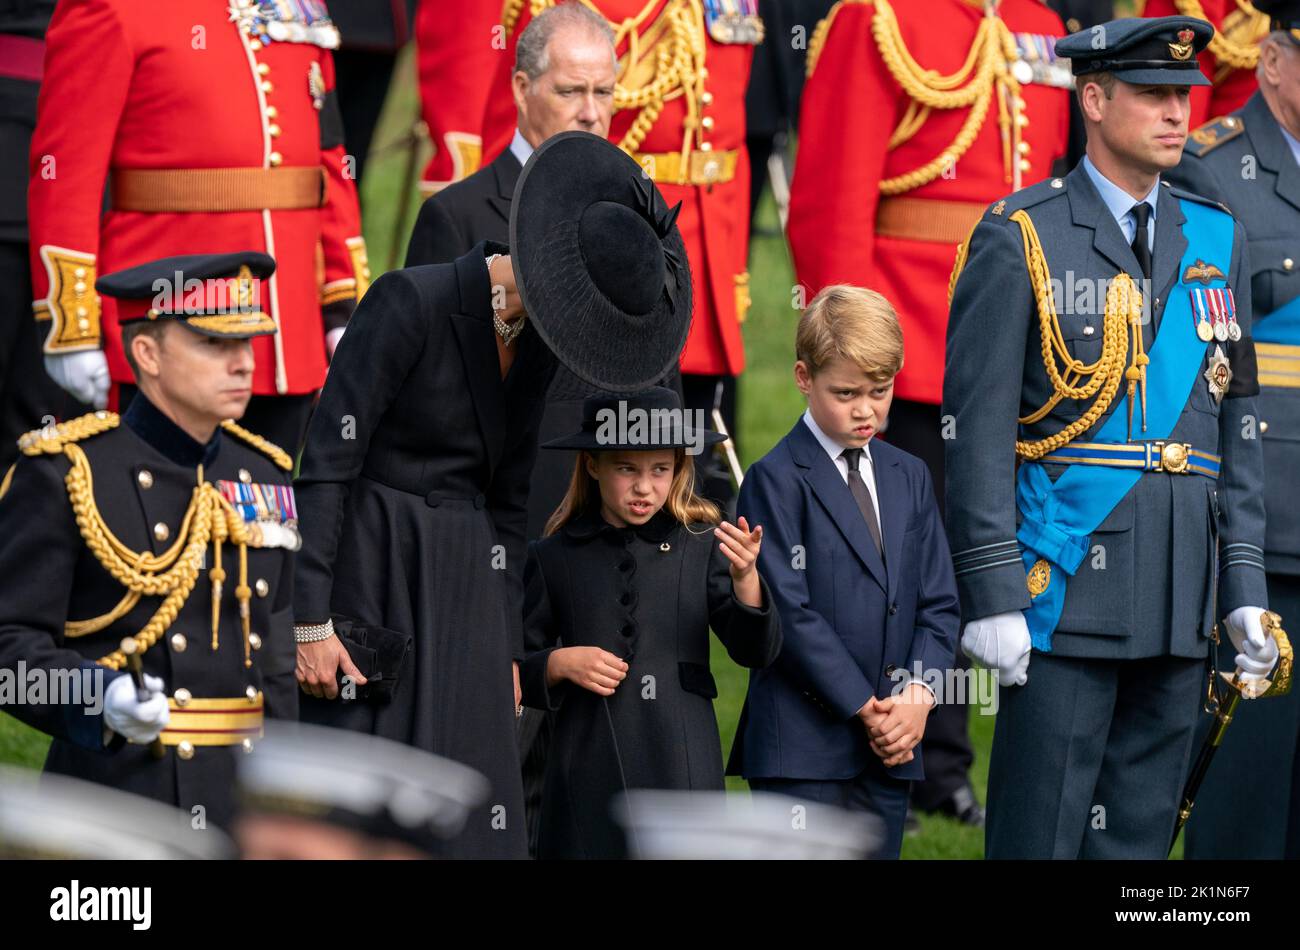 La princesa de Gales, la princesa Charlotte, el príncipe George y el príncipe de Gales miran como el carruaje de armas del Estado que lleva el ataúd de la reina Isabel II llega al Arco de Wellington durante la procesión ceremonial que siguió a su funeral del Estado en la Abadía de Westminster, Londres. Foto de stock